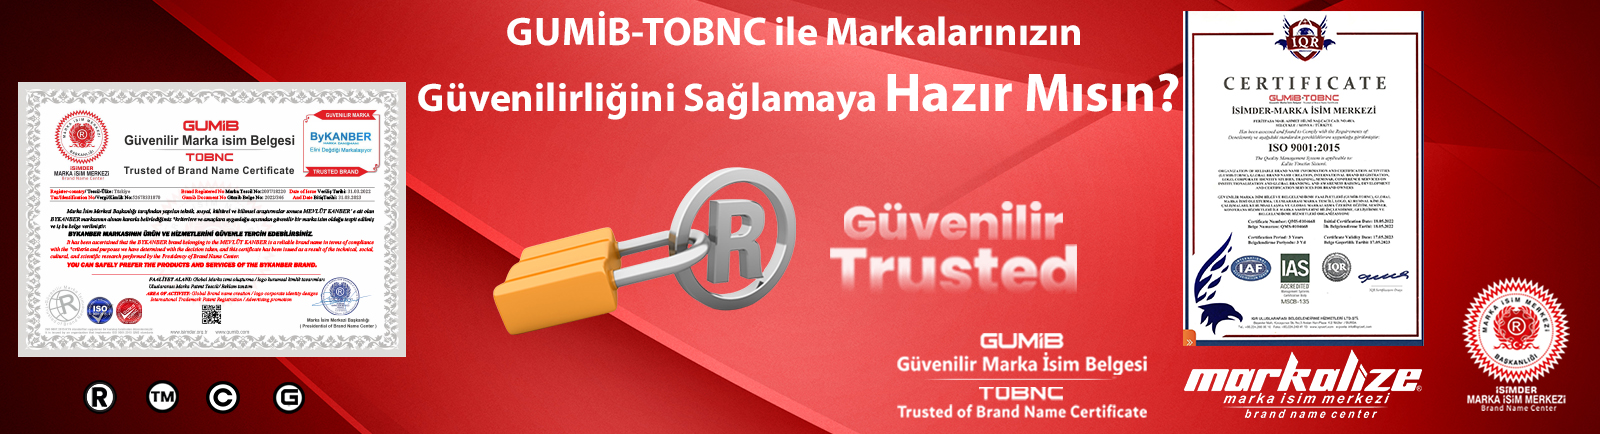 GUMİB-TOBNC ile Markalarınızın Güvenilirliğini Sağlamaya Hazır Mısın?